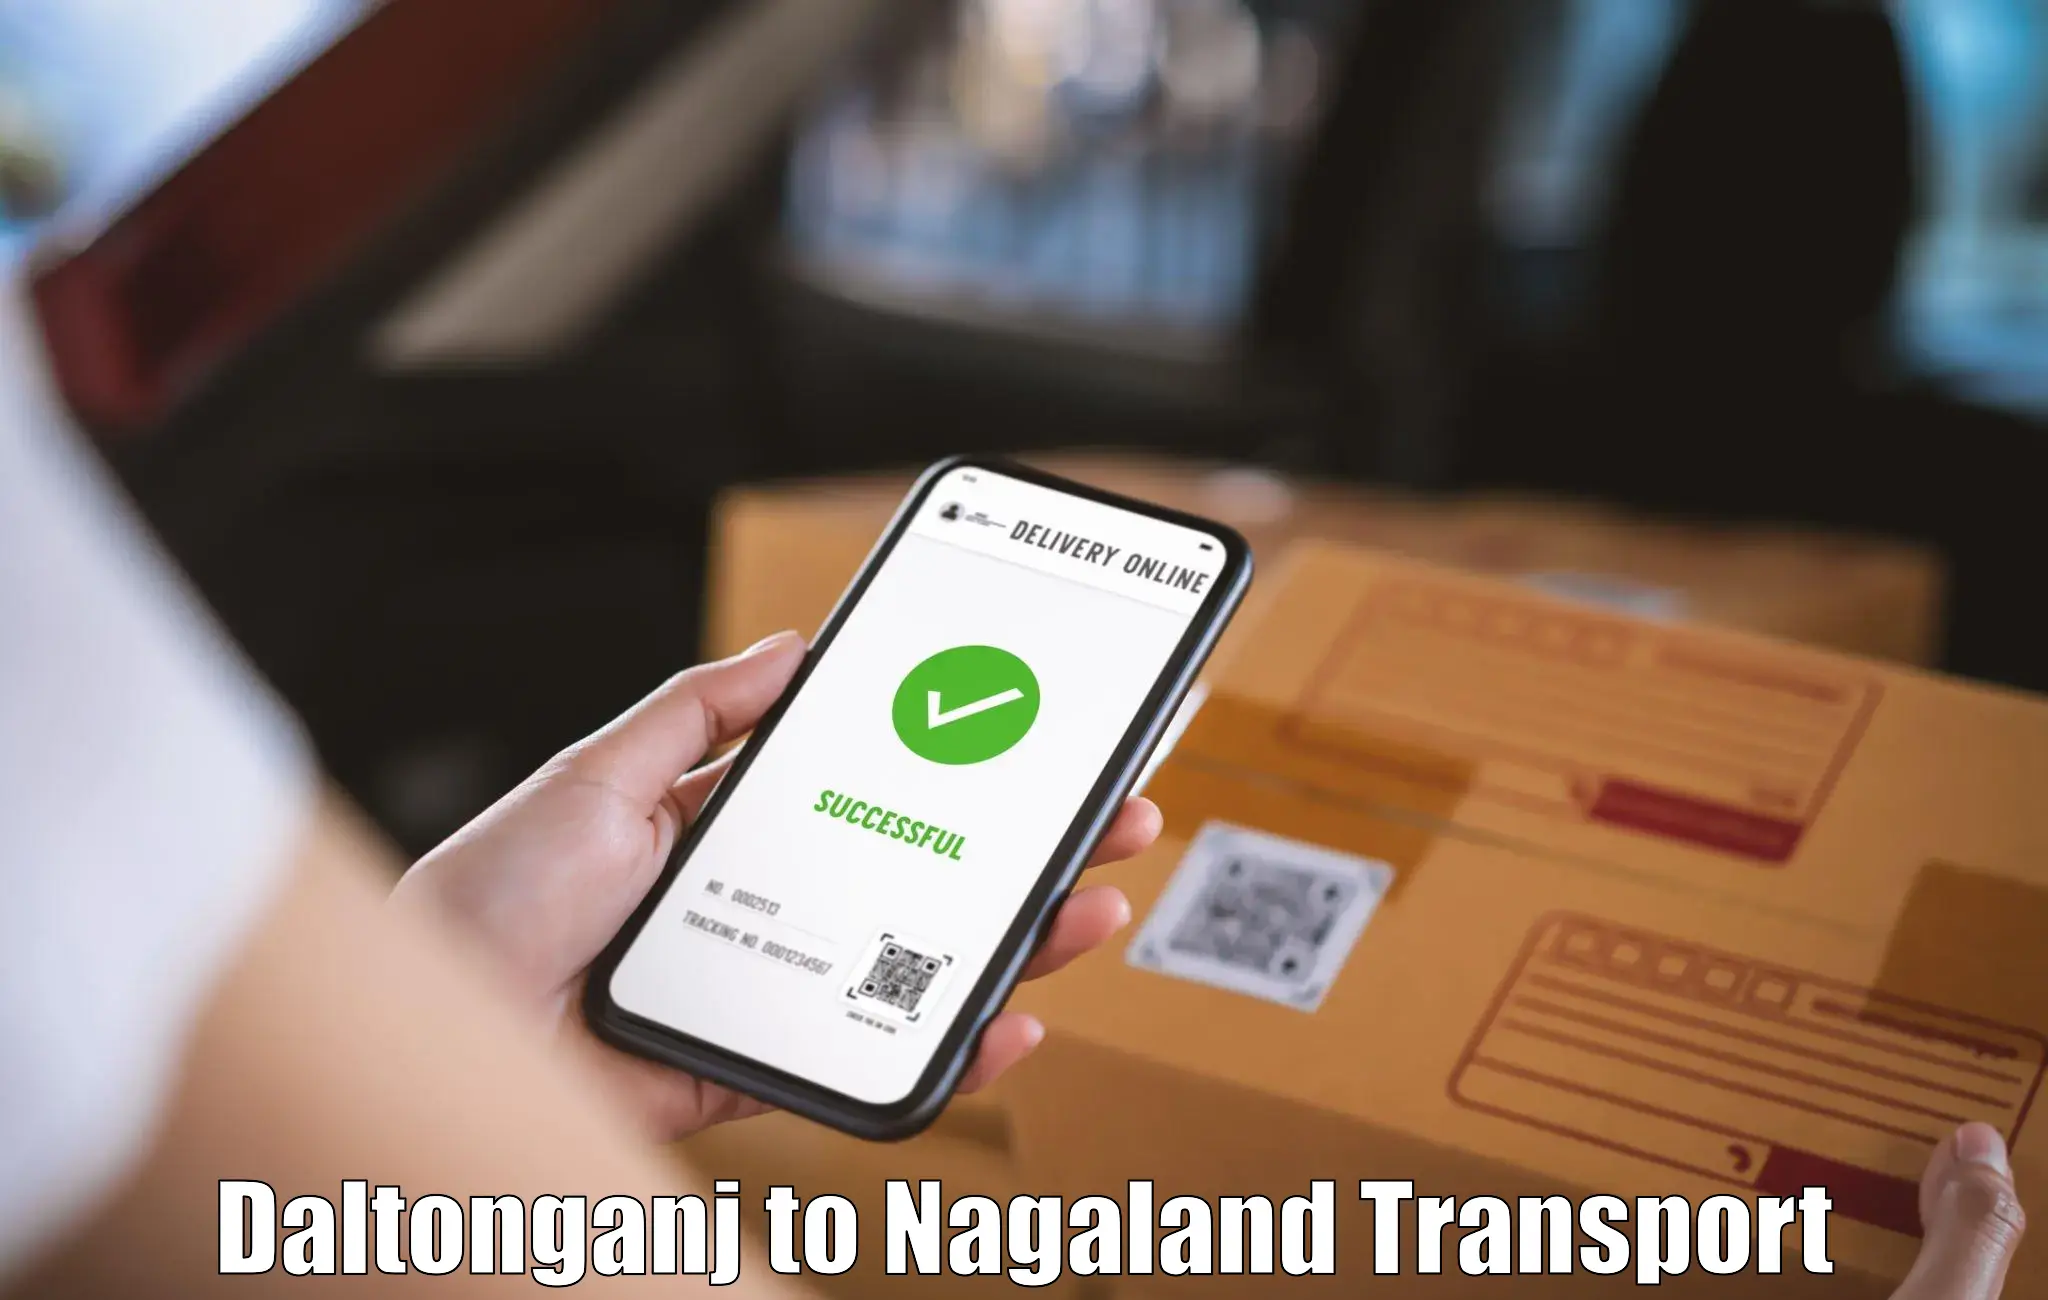 Transport in sharing Daltonganj to Mokokchung